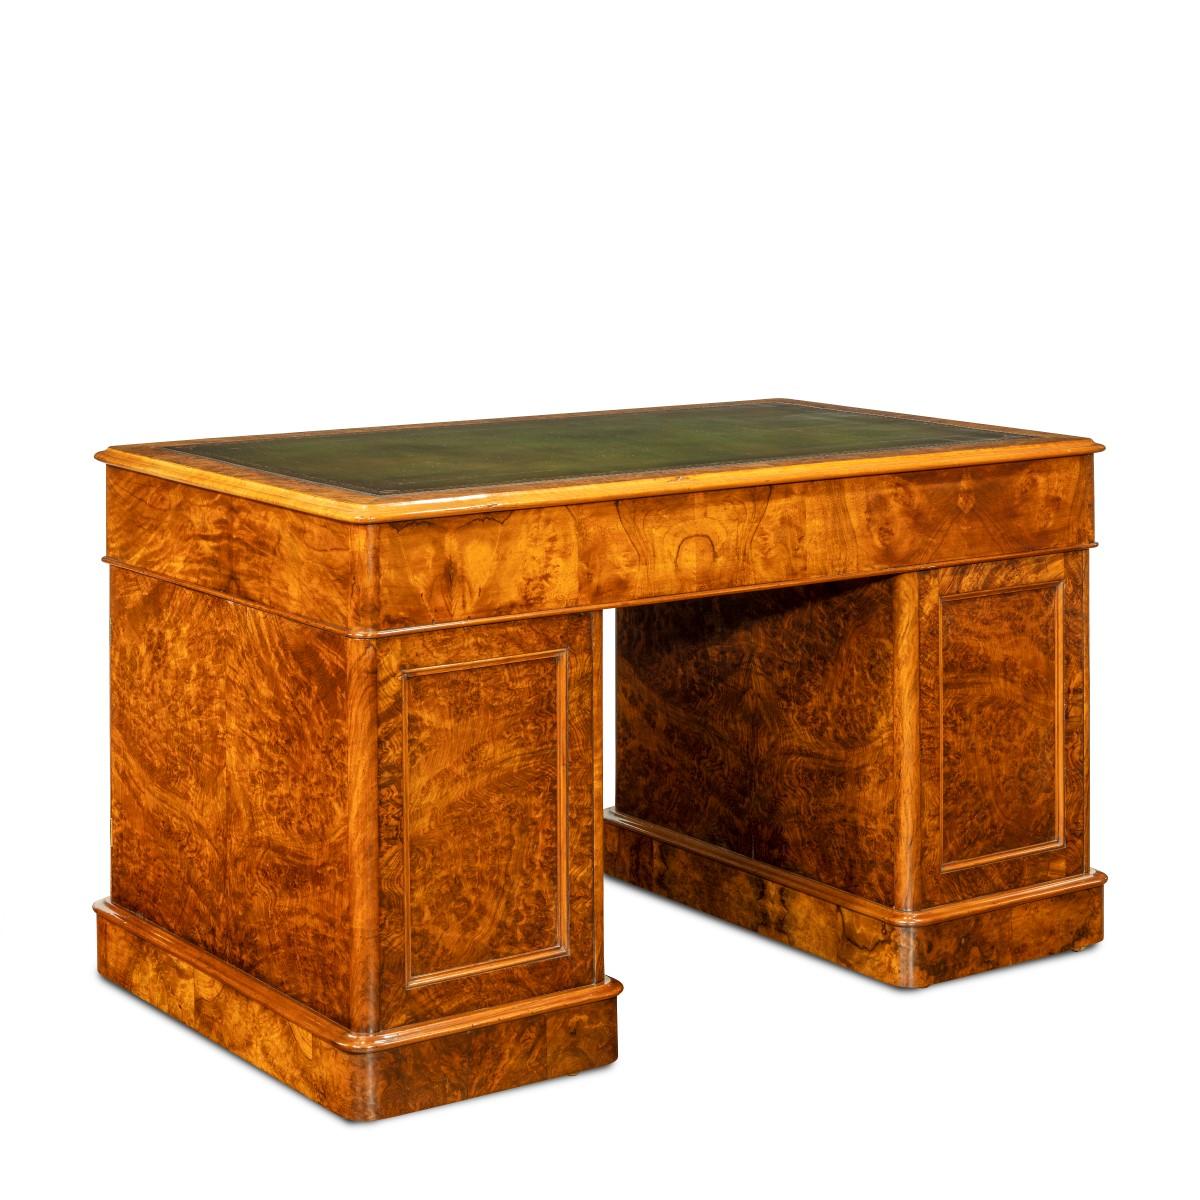 A Victorian burr walnut free standing pedestal desk by Druce & Co